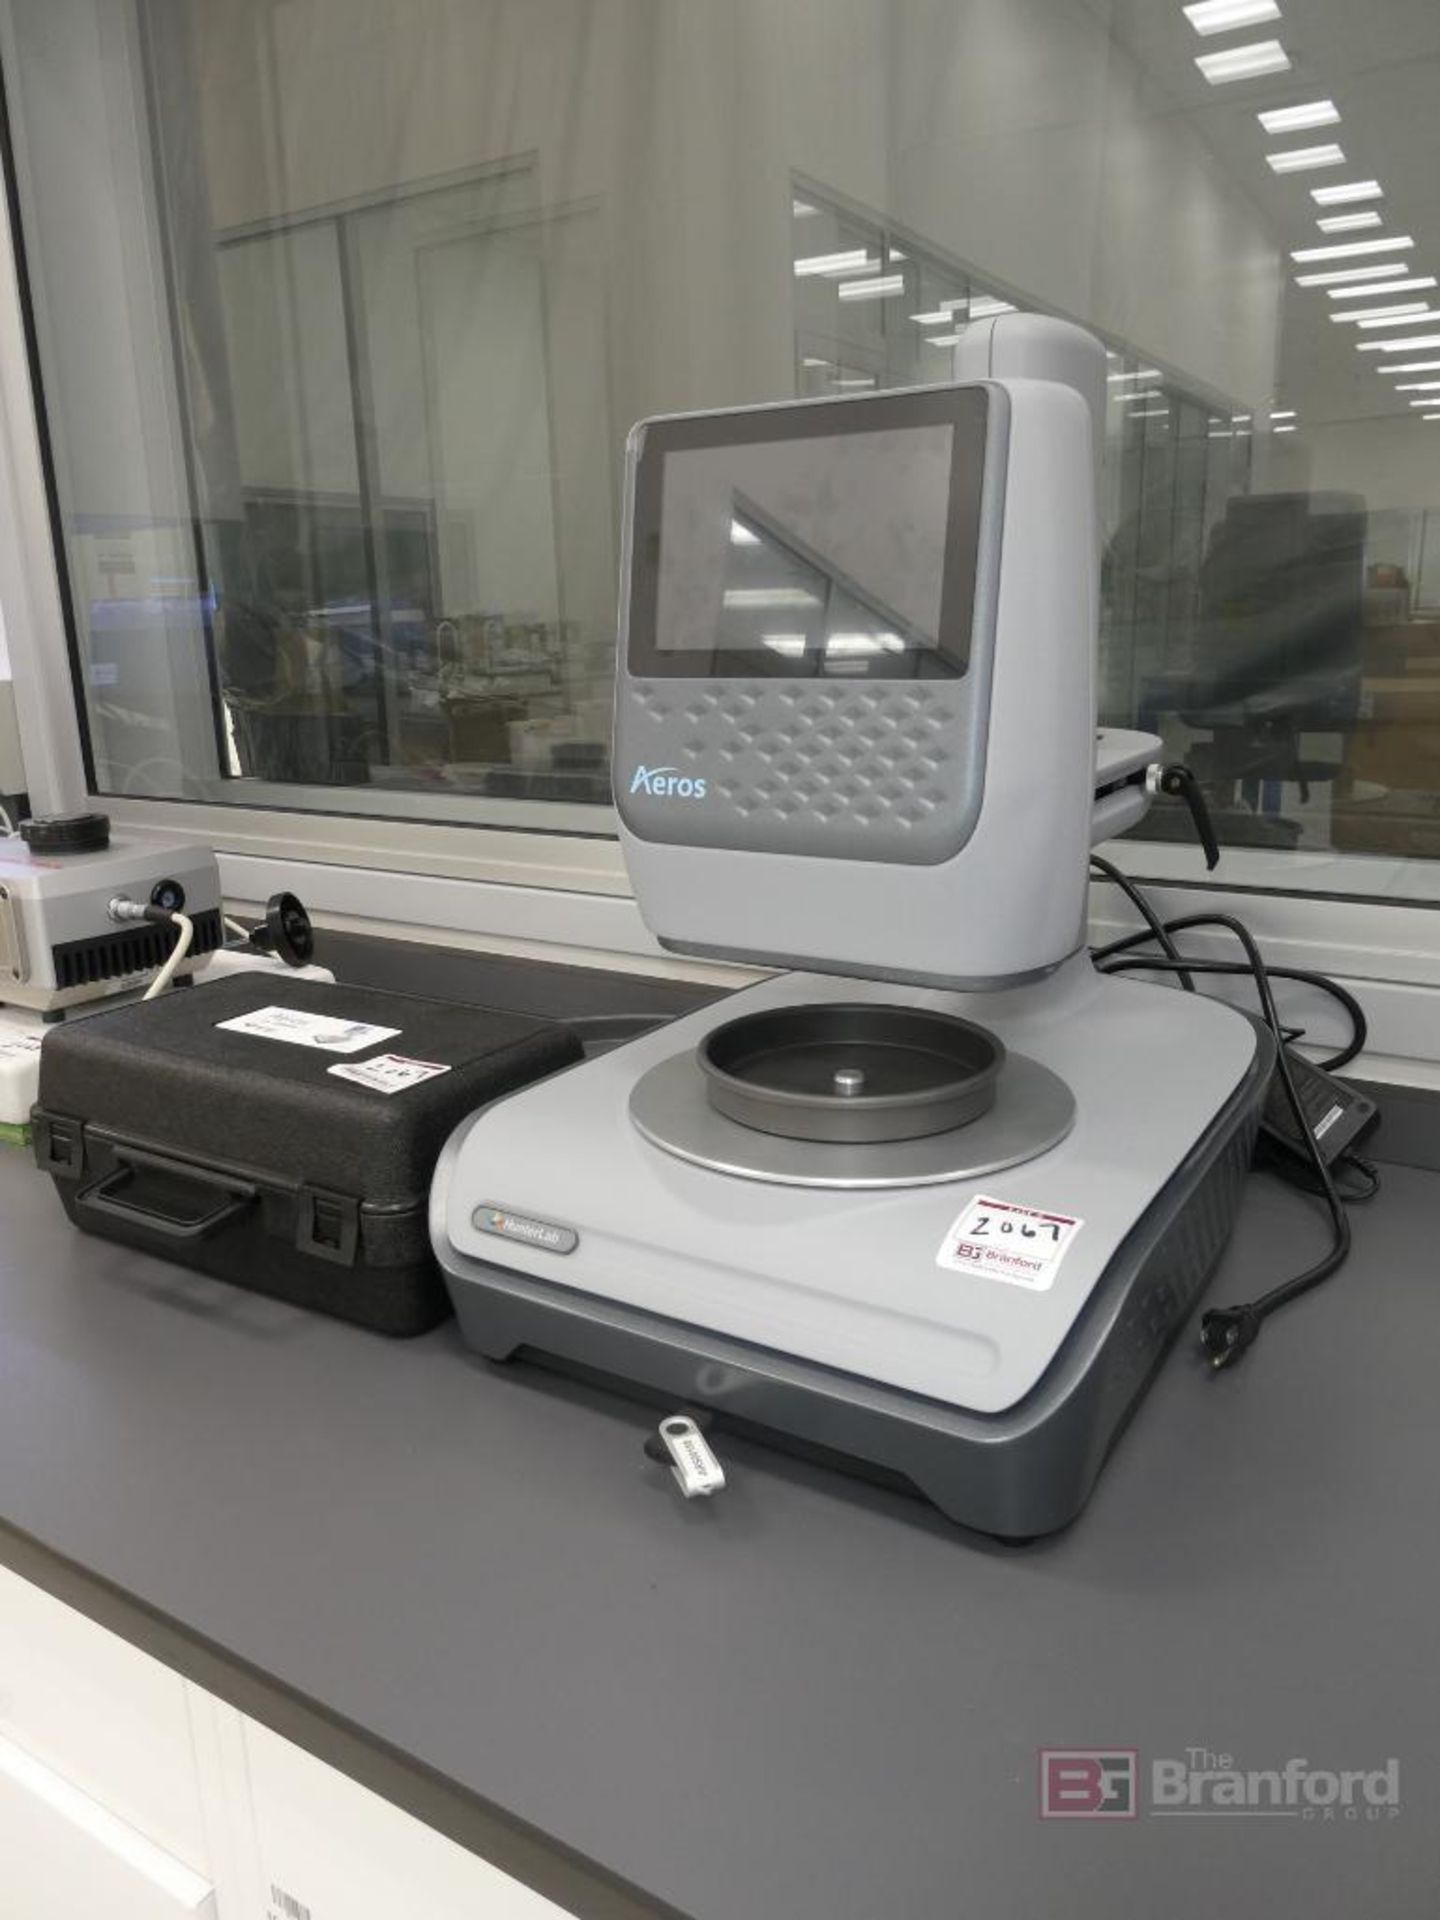 Hunter Lab Model Aeros, Spectrophotometer Color Measurement System